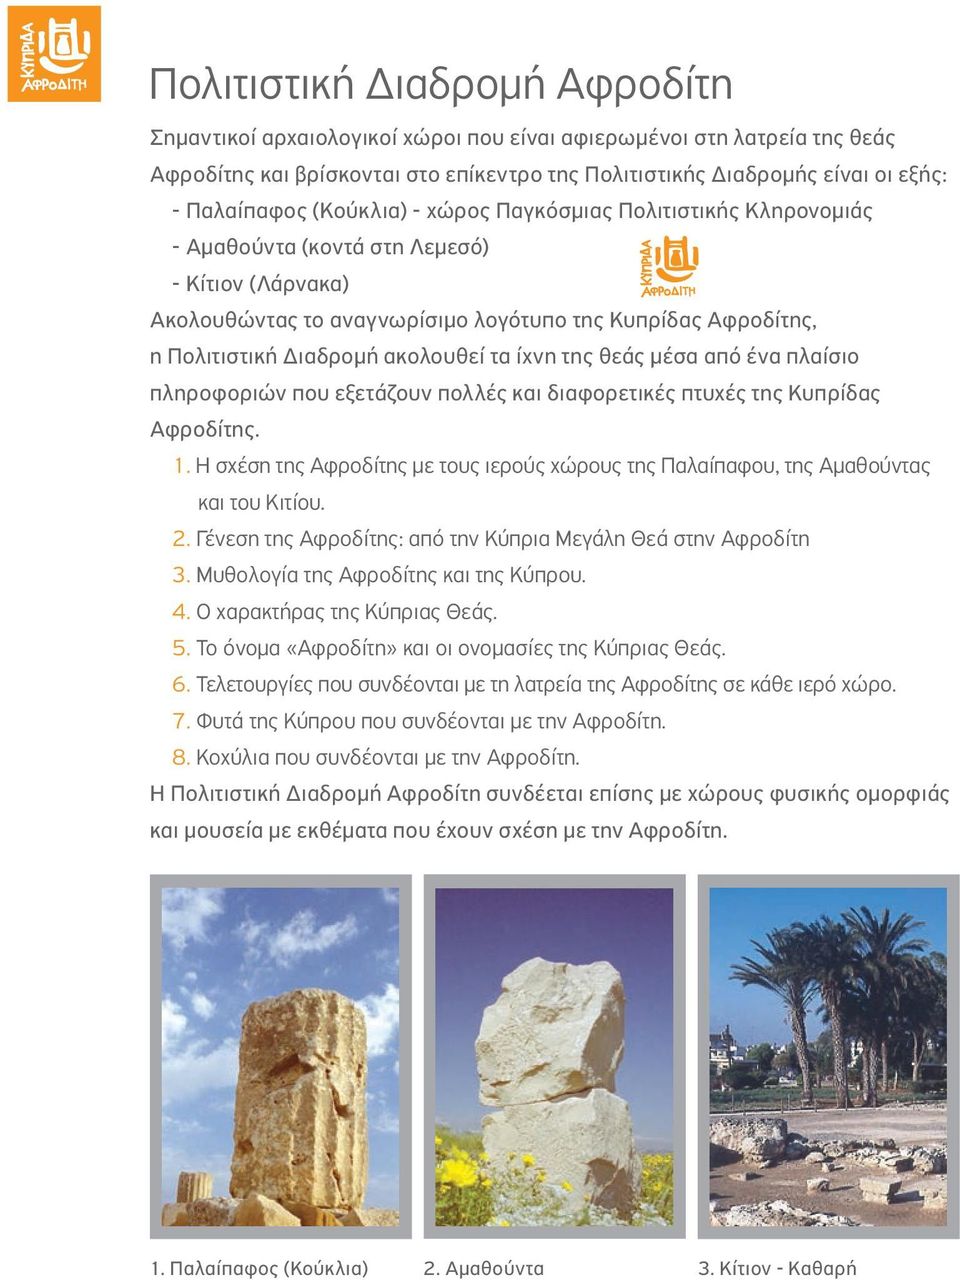 τα ίχνη της θεάς μέσα από ένα πλαίσιο πληροφοριών που εξετάζουν πολλές και διαφορετικές πτυχές της Κυπρίδας Αφροδίτης. 1.